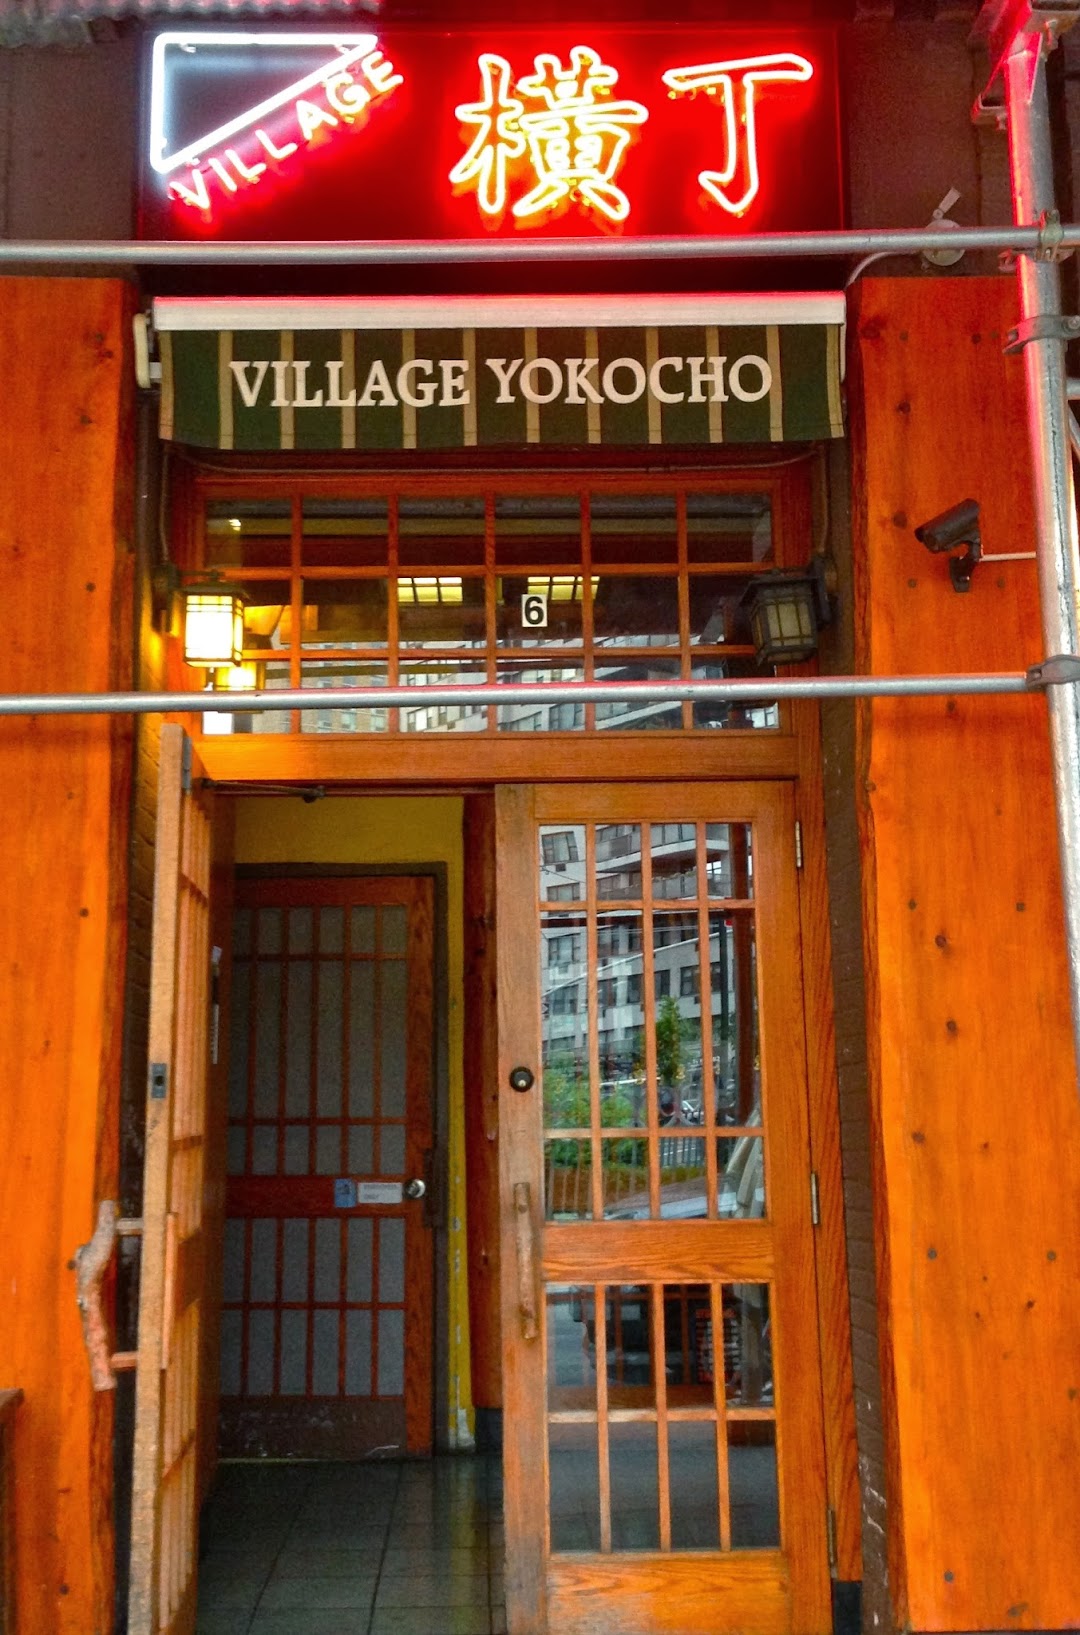 Village Yokocho